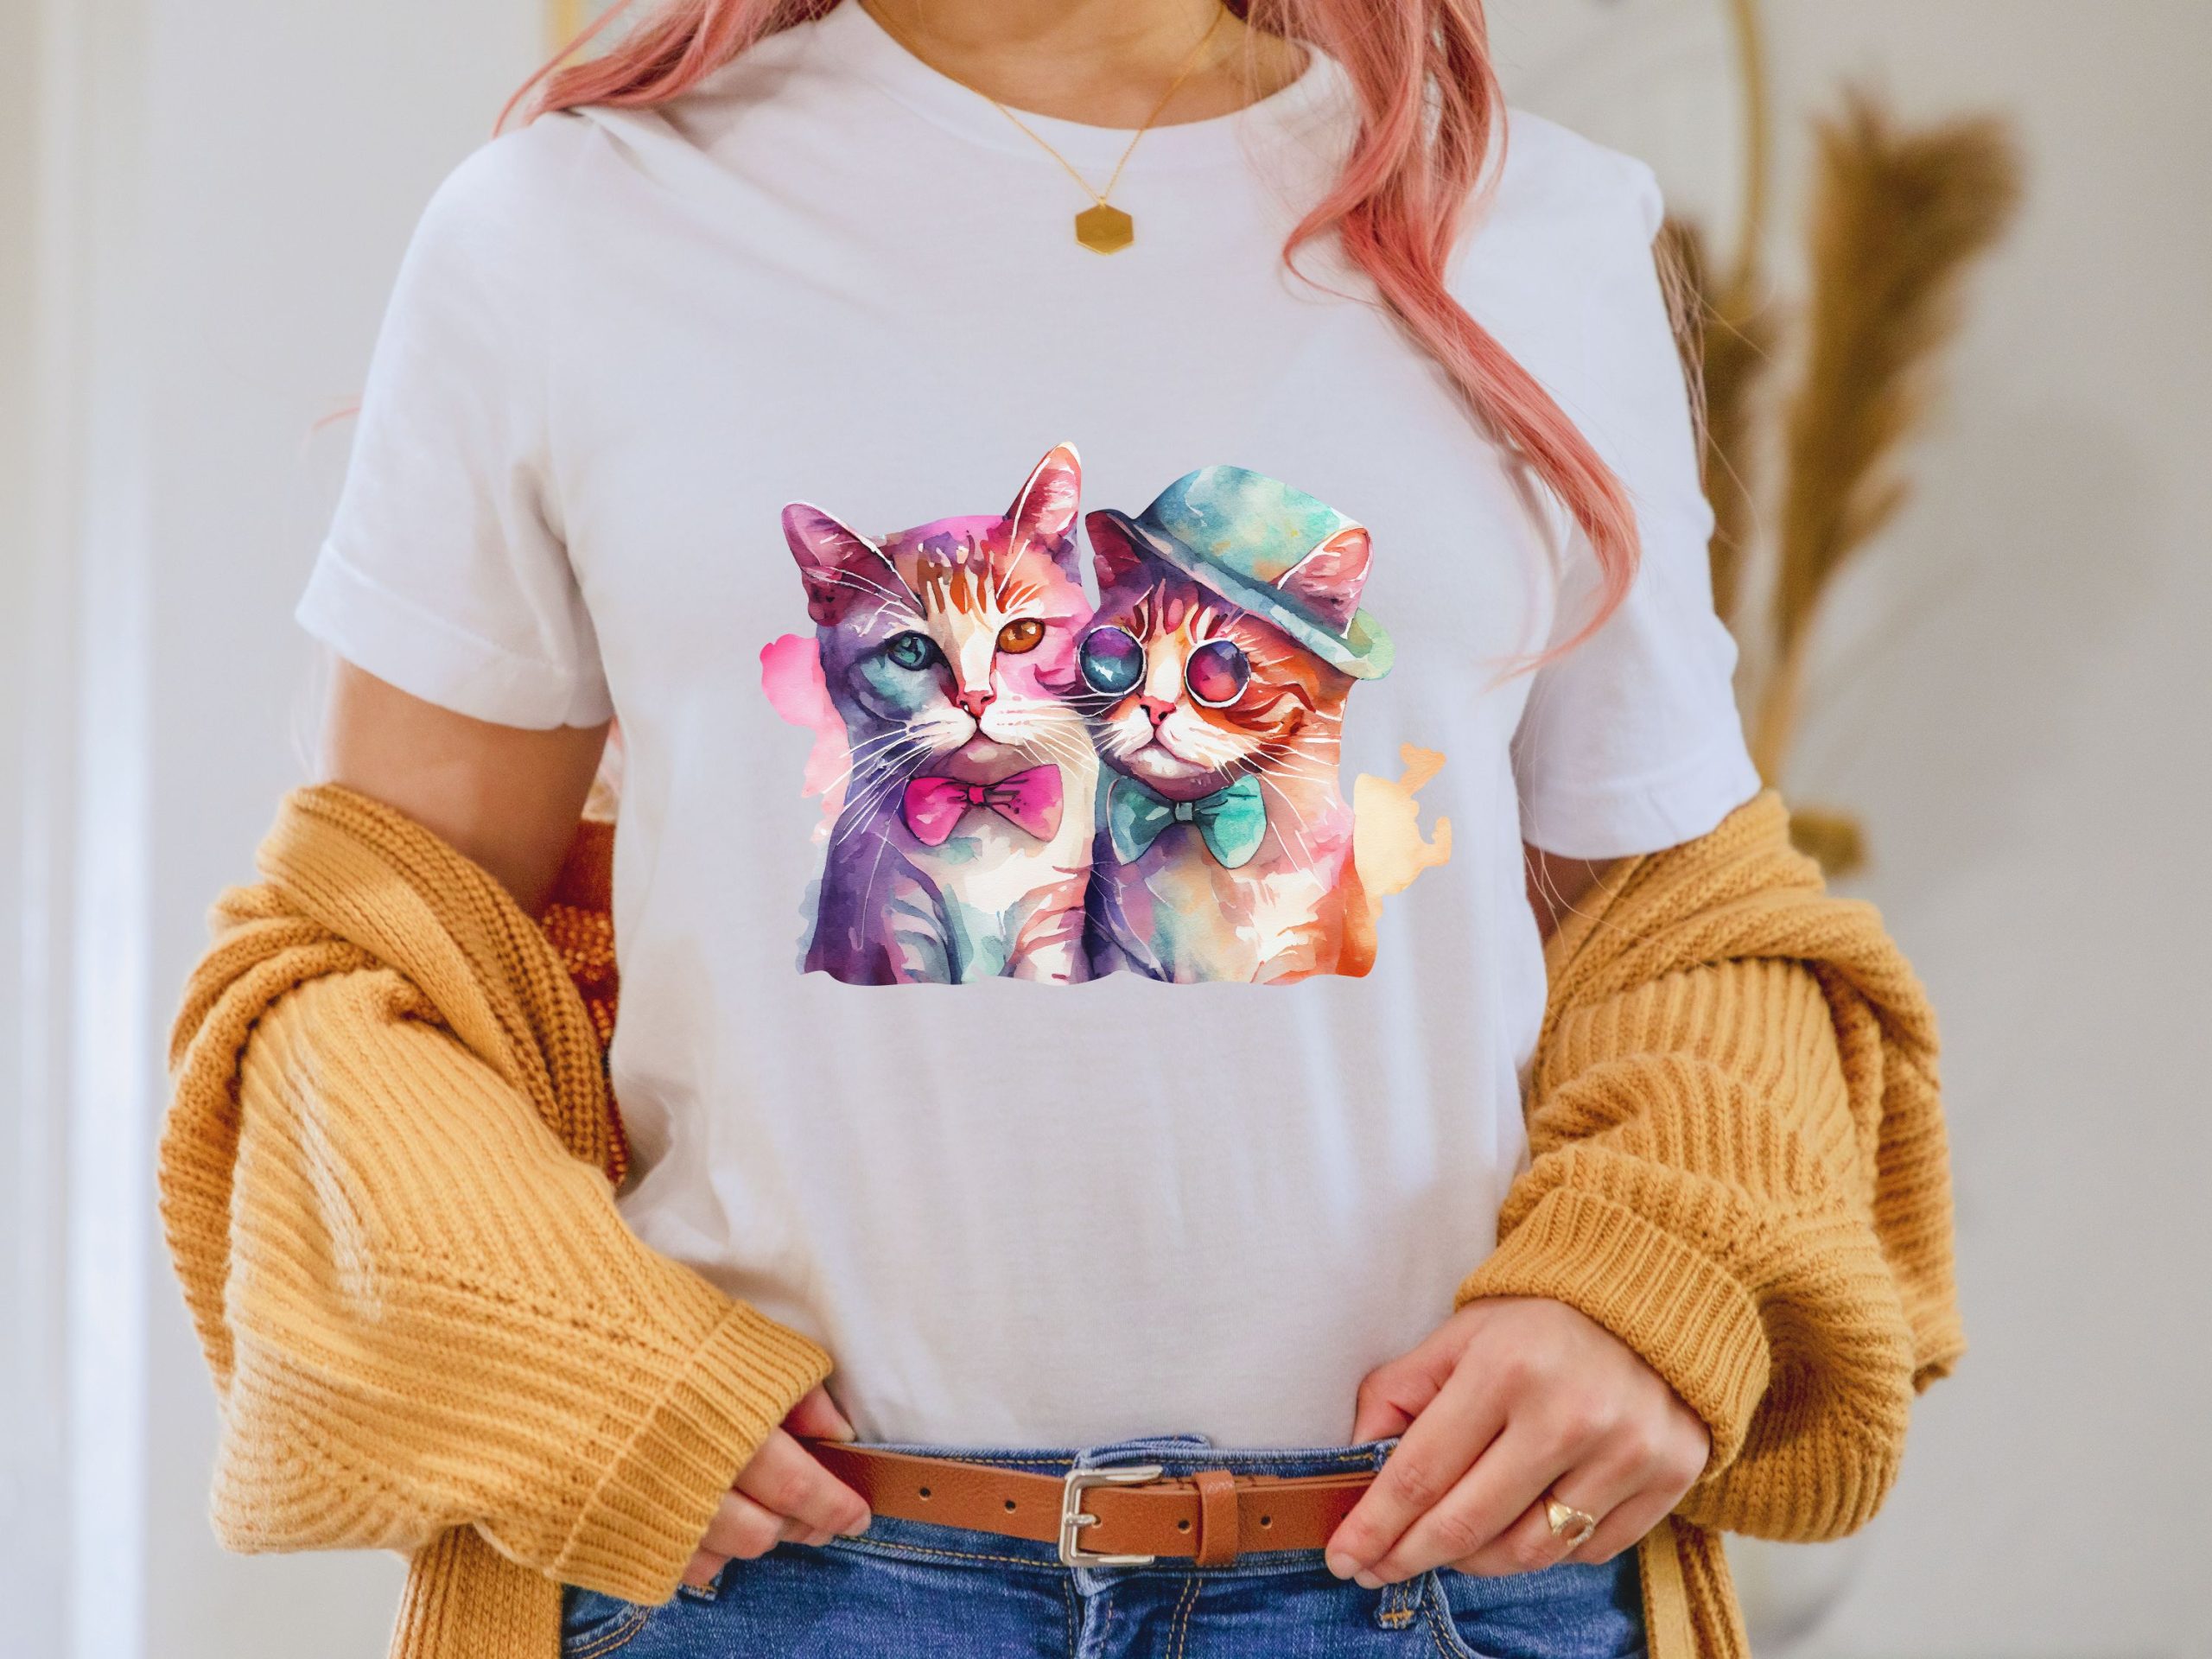 Cute cats t-shirt, Valentine shirt women, Lgbt gifts